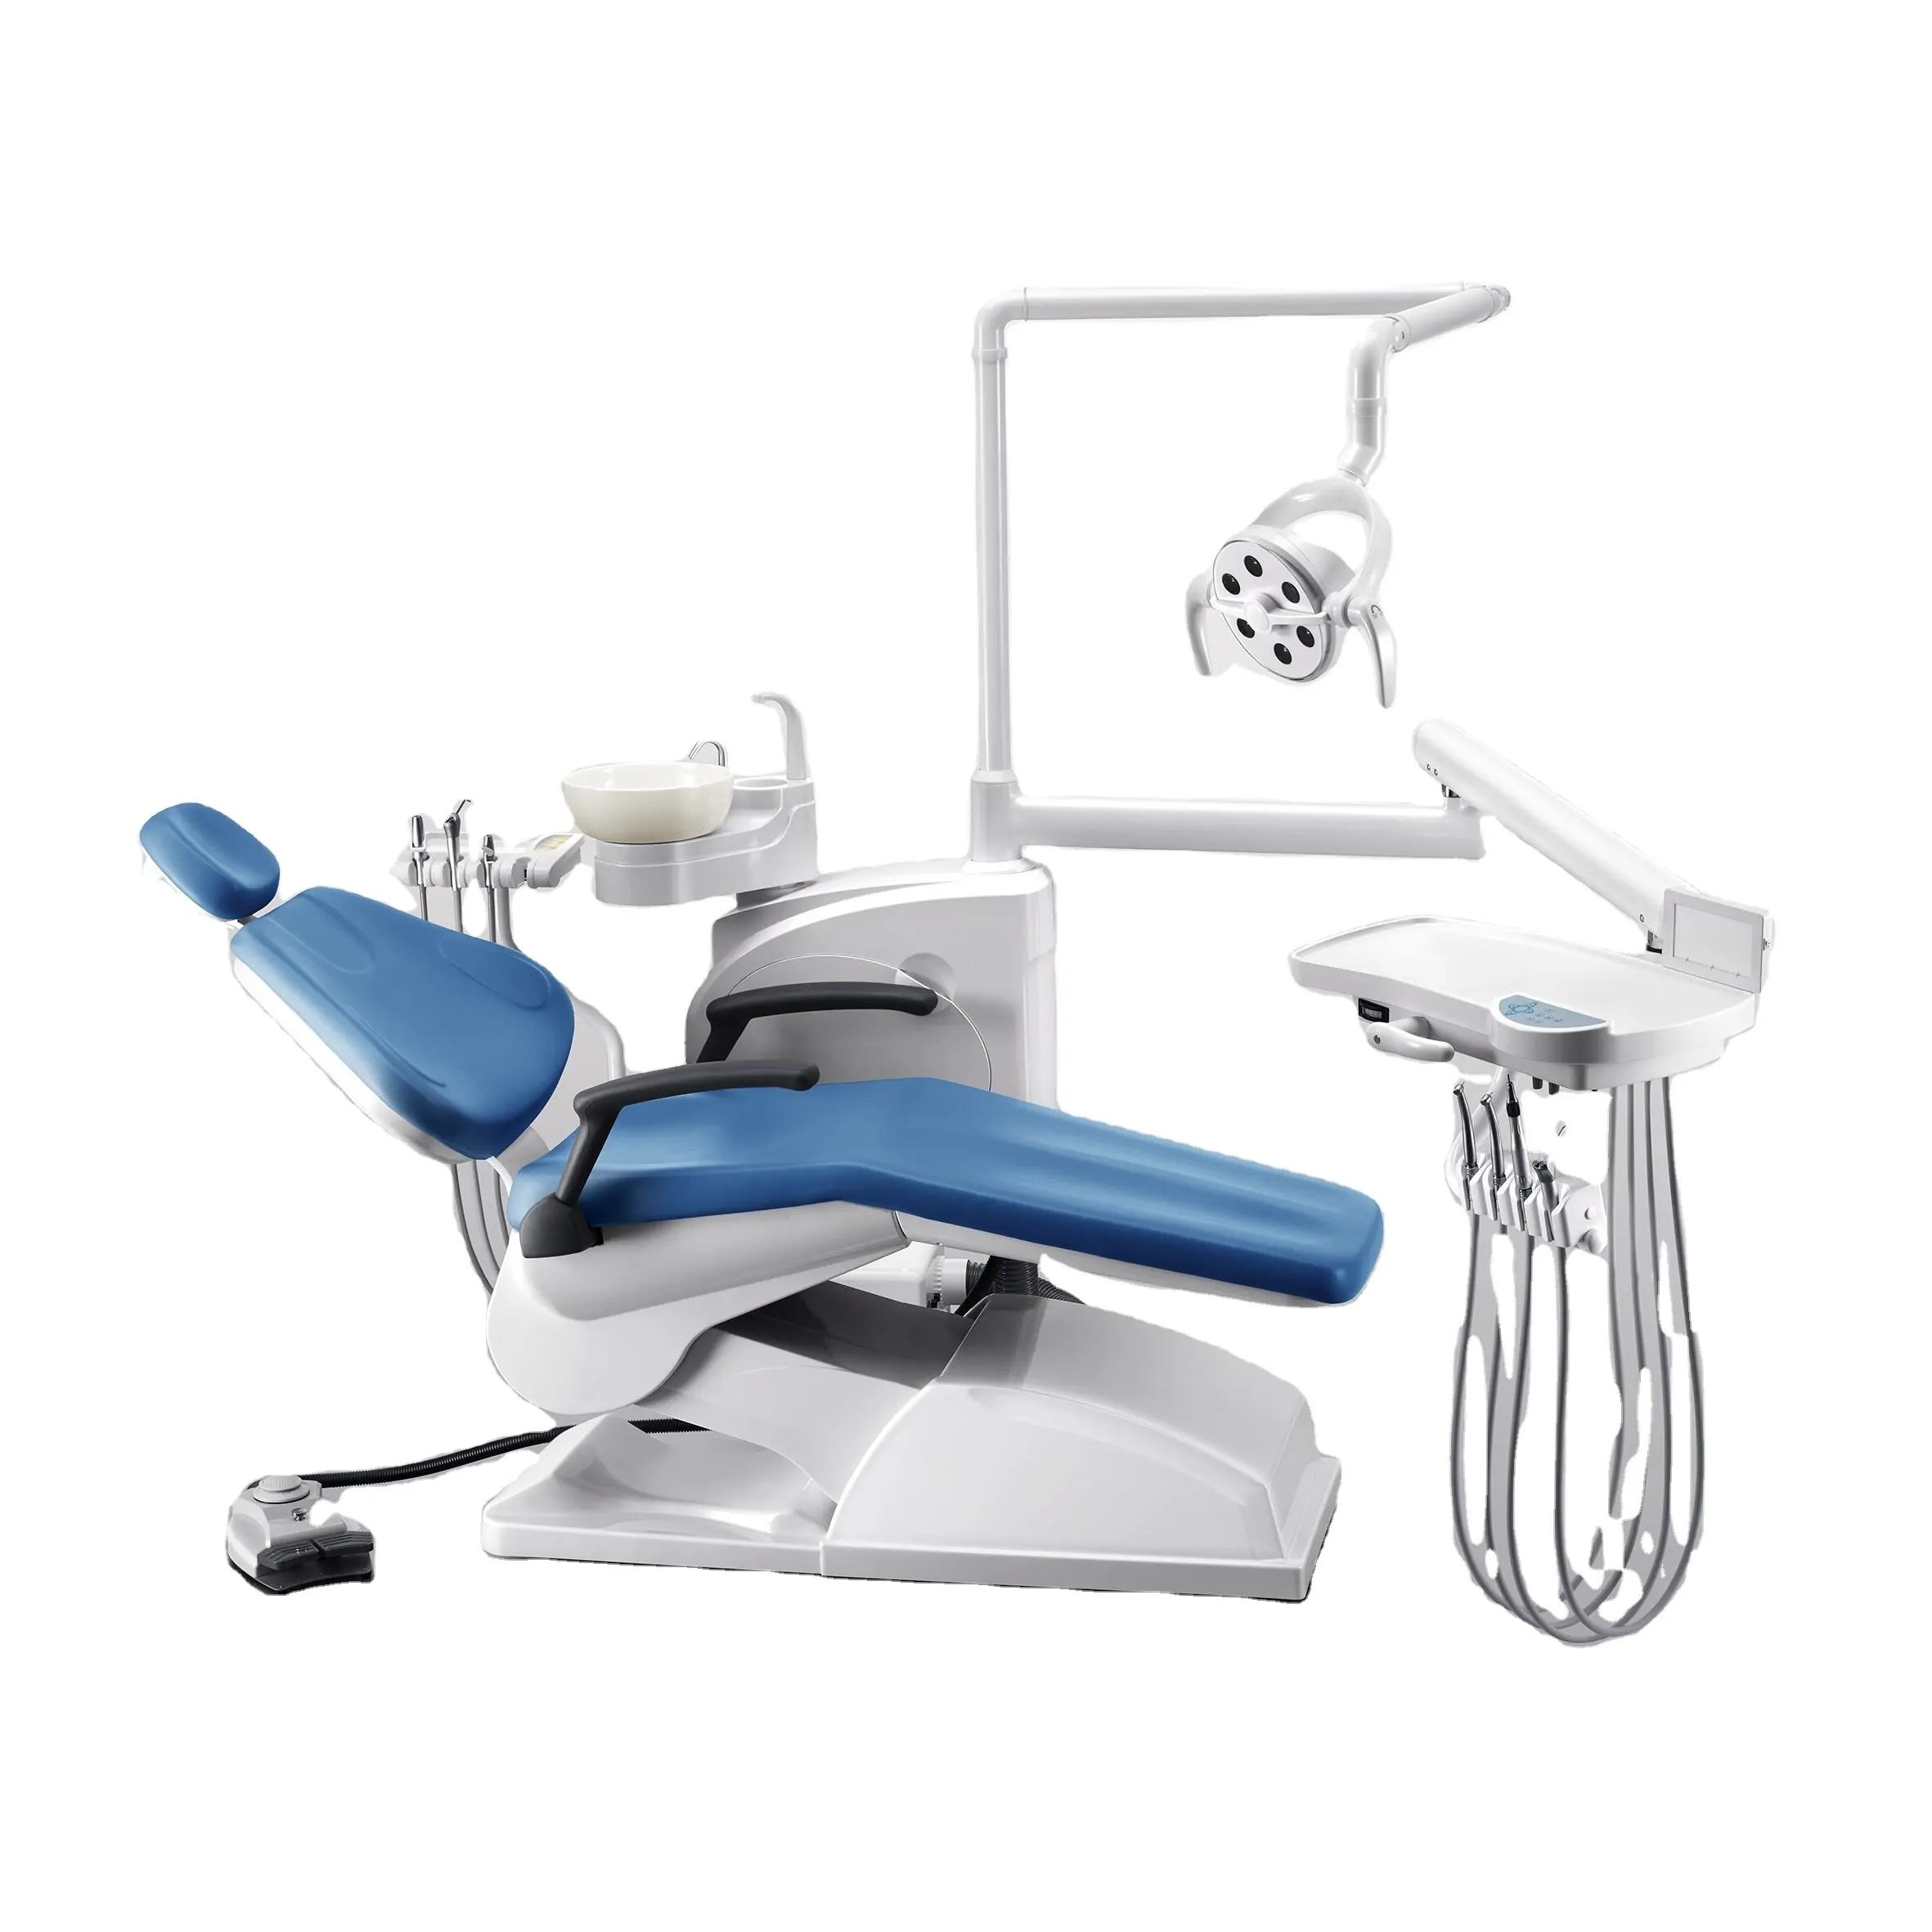 Sedia dentale mobile di sicurezza altre attrezzature dentali unità dentale prezzo di fabbrica unità poltrona odontoiatrica